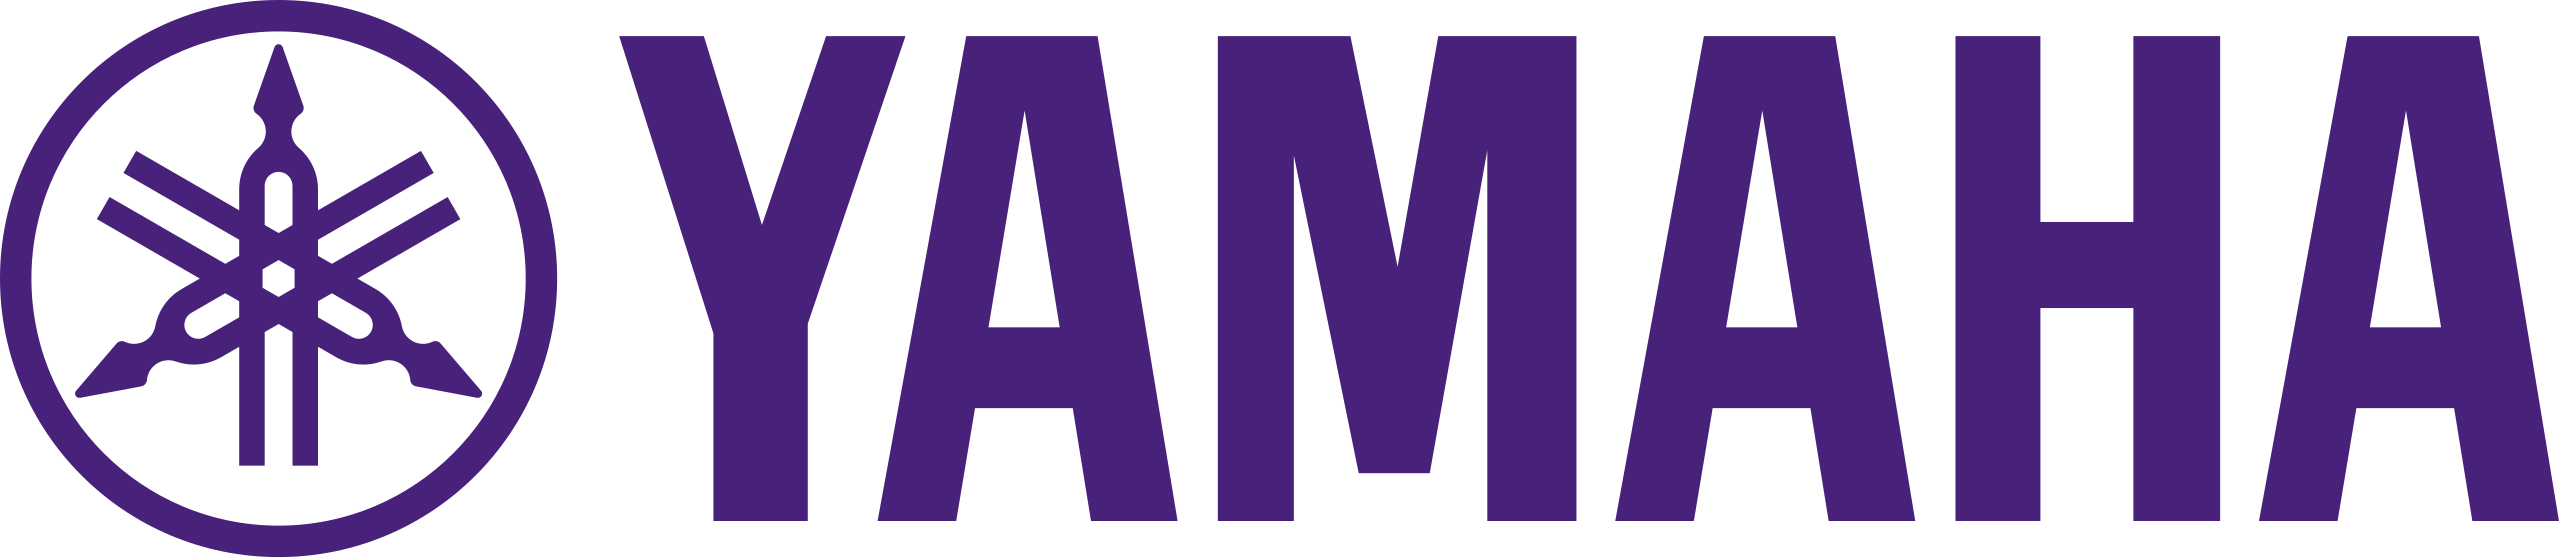 Yamaha Logo PNG Clipart